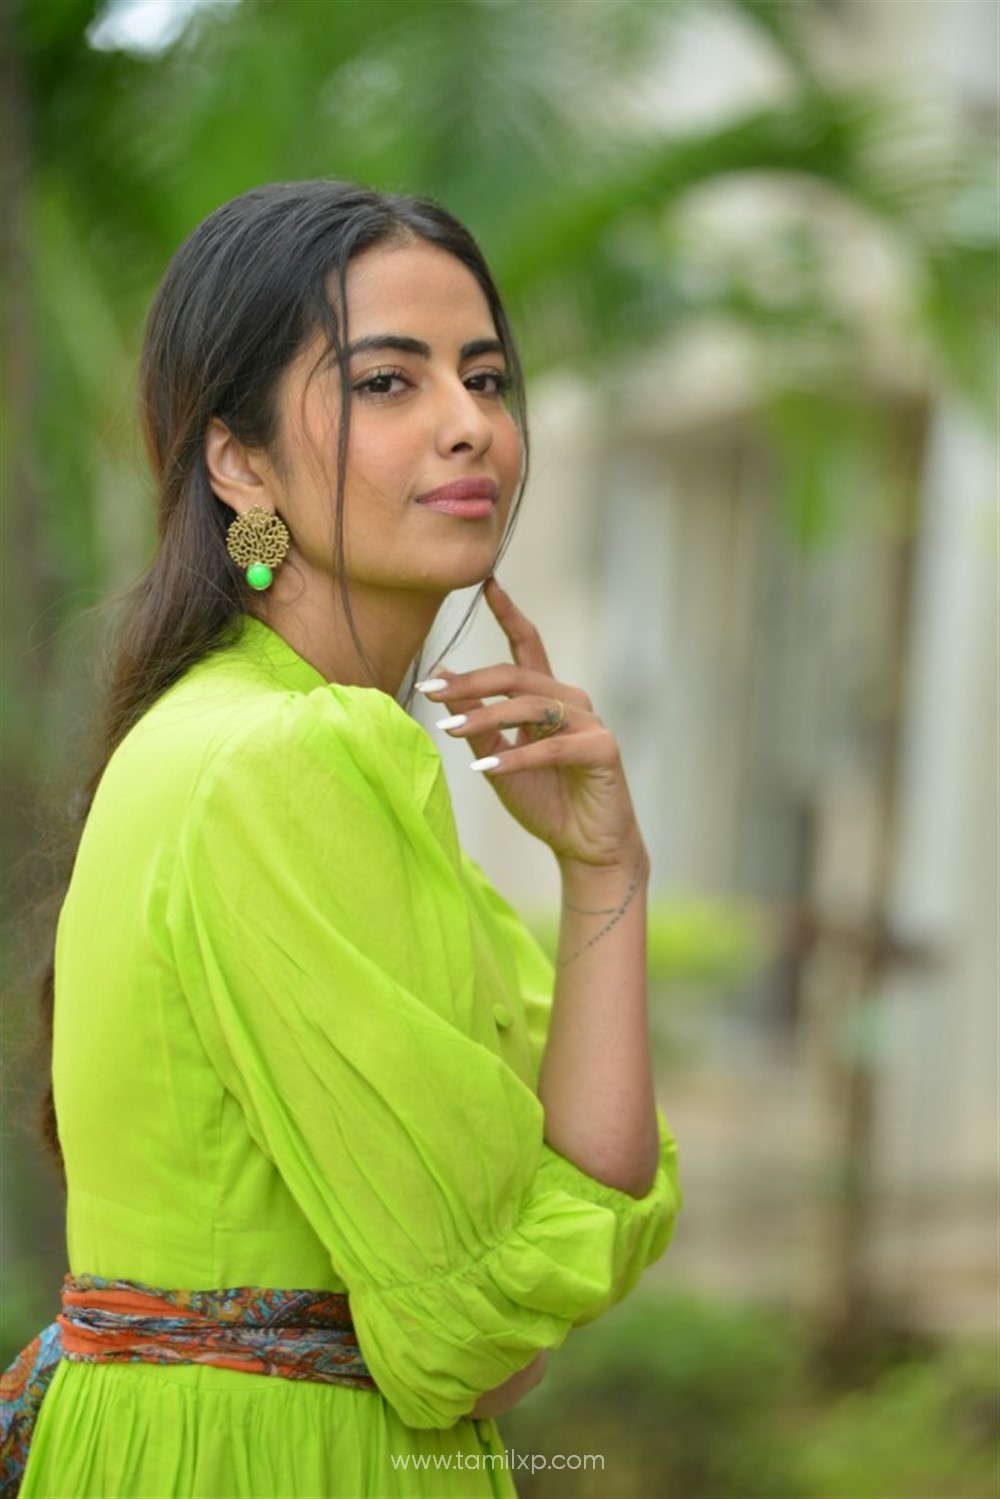 Telugu Actress Avika Gor Images